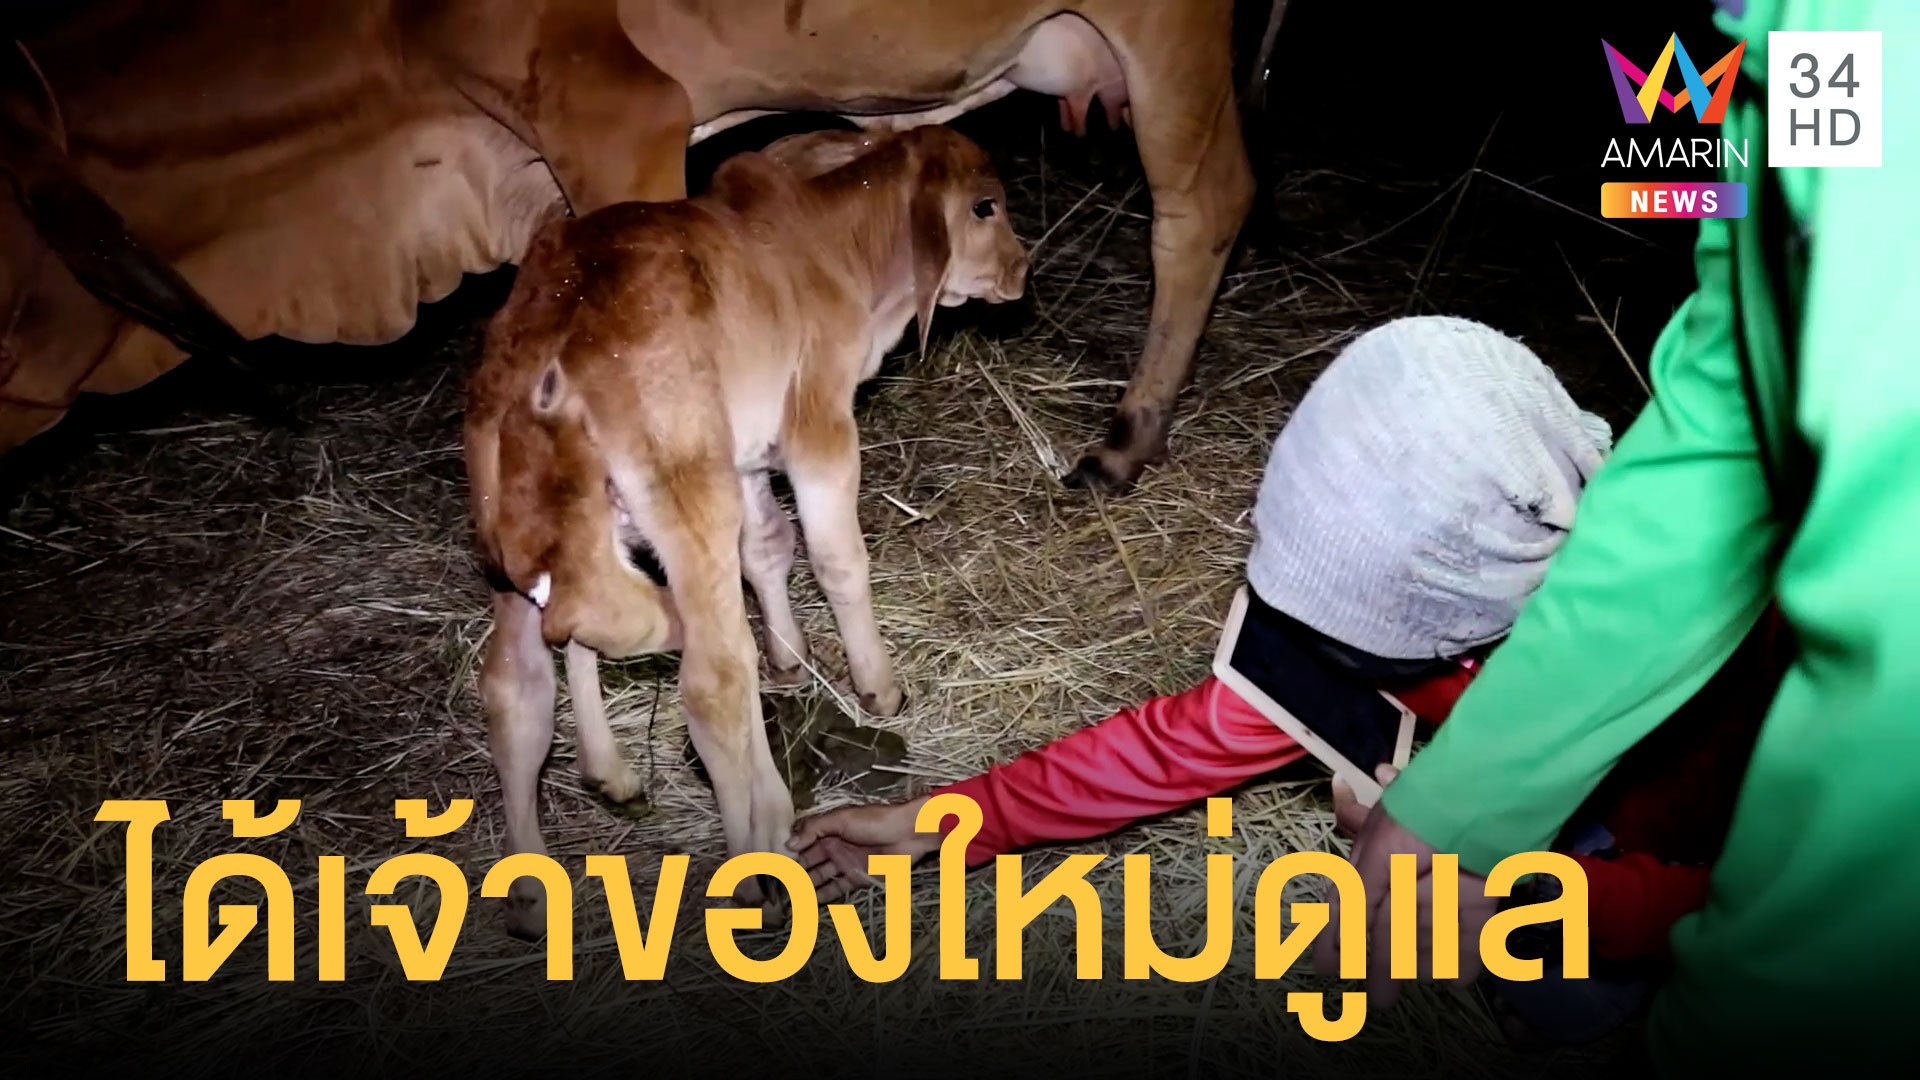 น้องบัวหลวง ลูกวัว 6 ขา ได้เจ้าของใหม่ดูแลแล้ว | ข่าวอรุณอมรินทร์ | 13 ธ.ค. 64 | AMARIN TVHD34